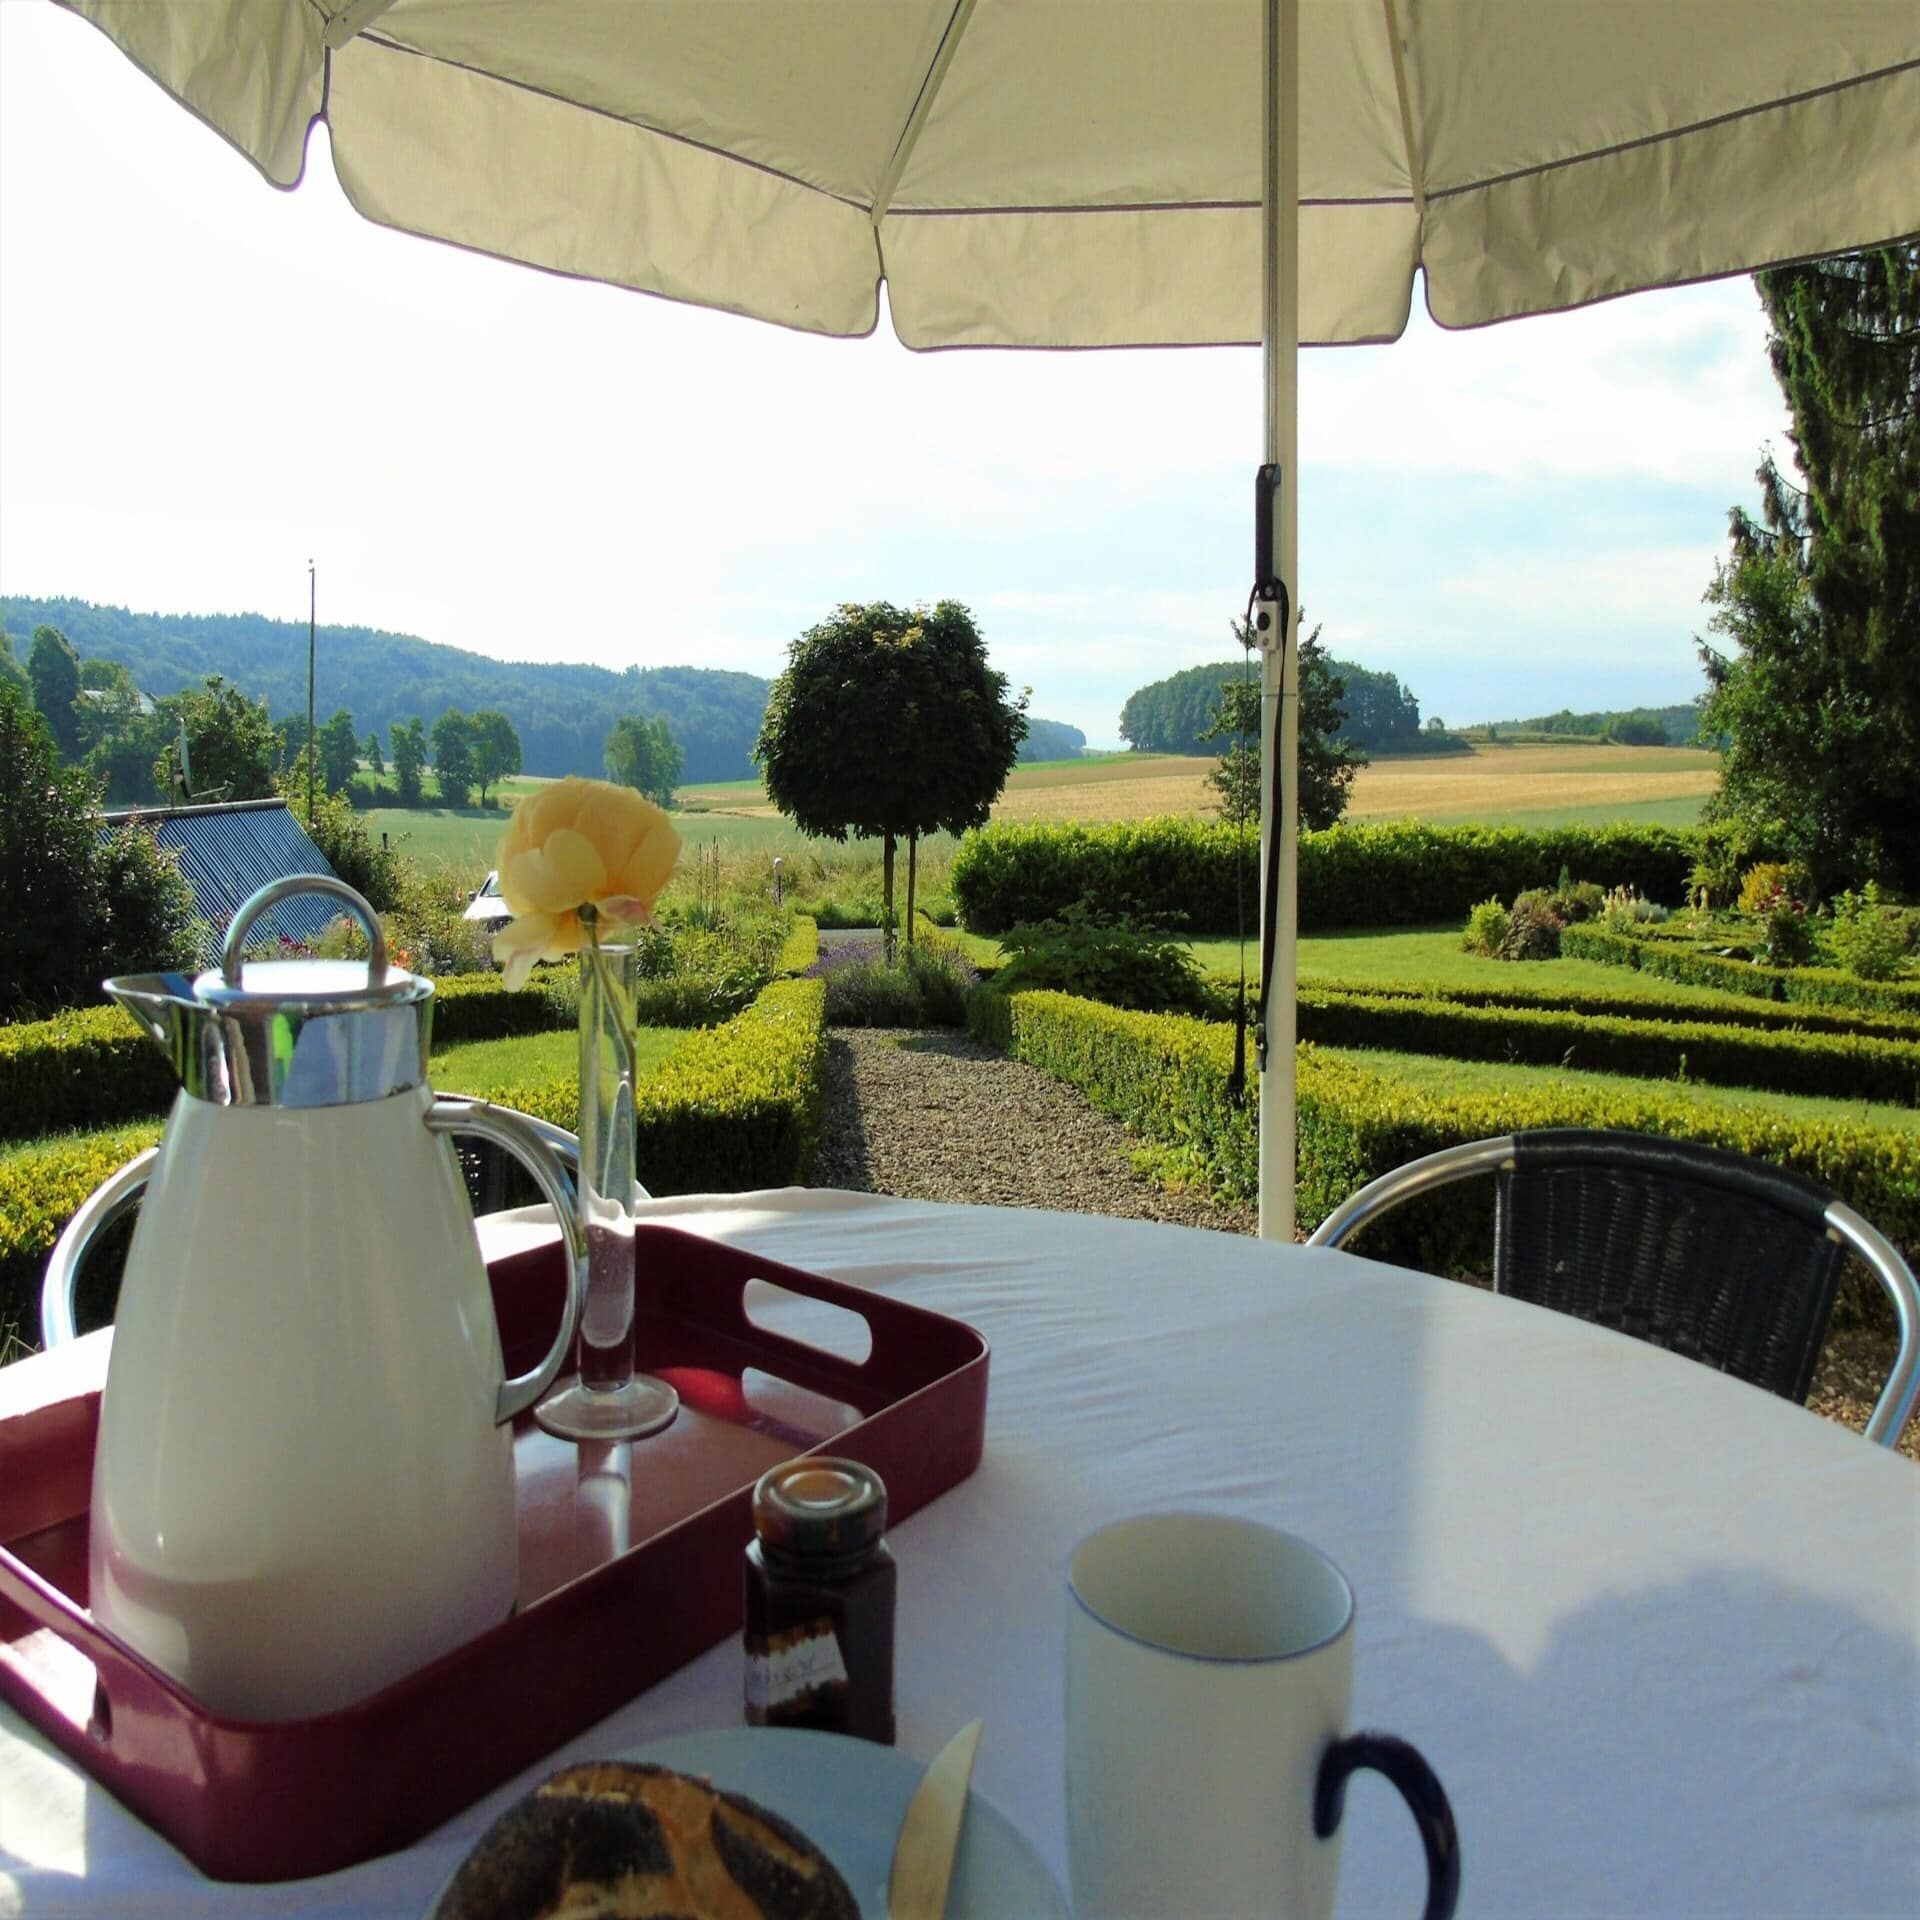 Frühstückstisch im Garten mit Blick auf die ländliche Umgebung.